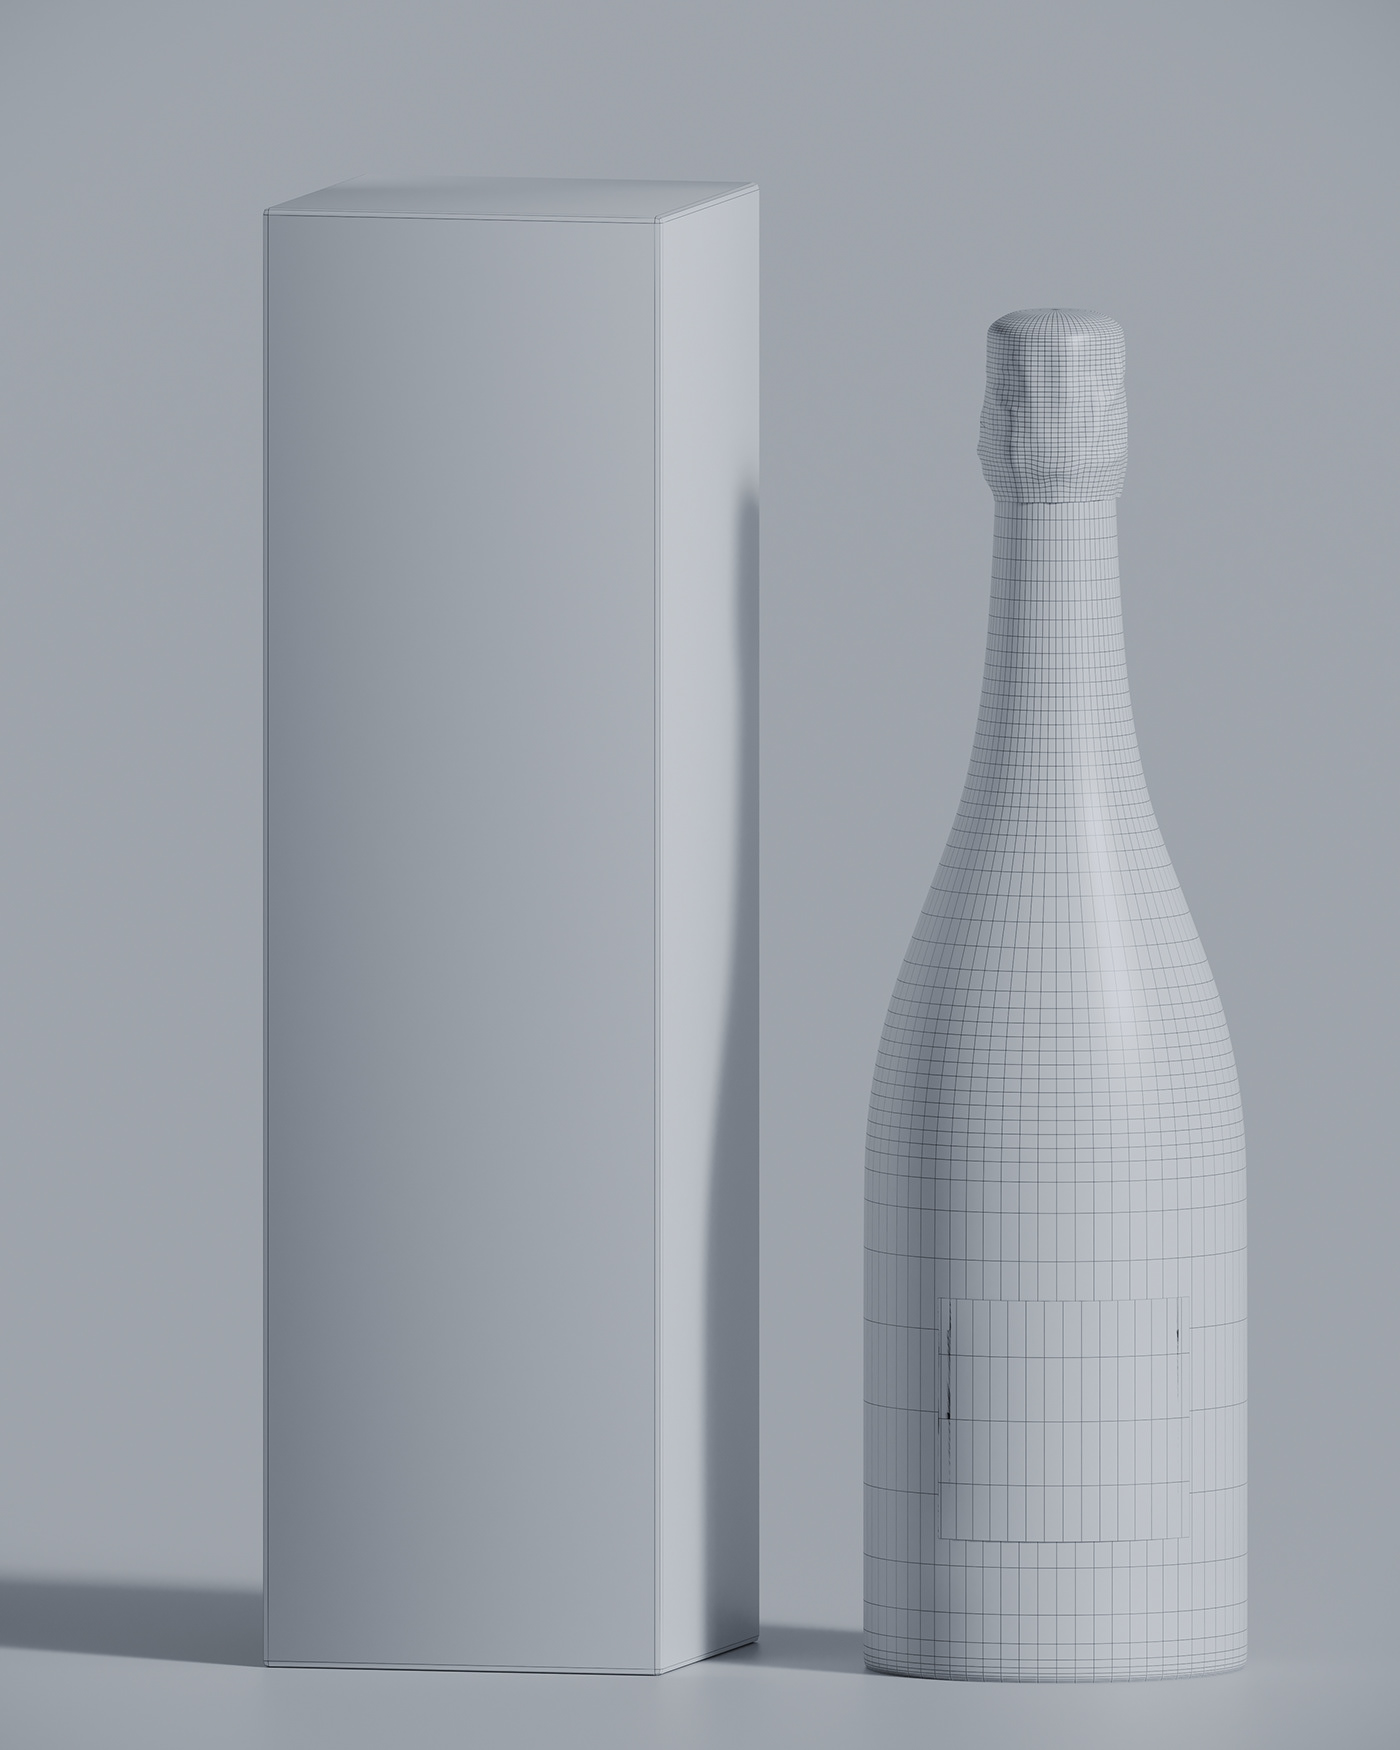 3D bottle modeling Moet moet et chandon product Realism Render rendering